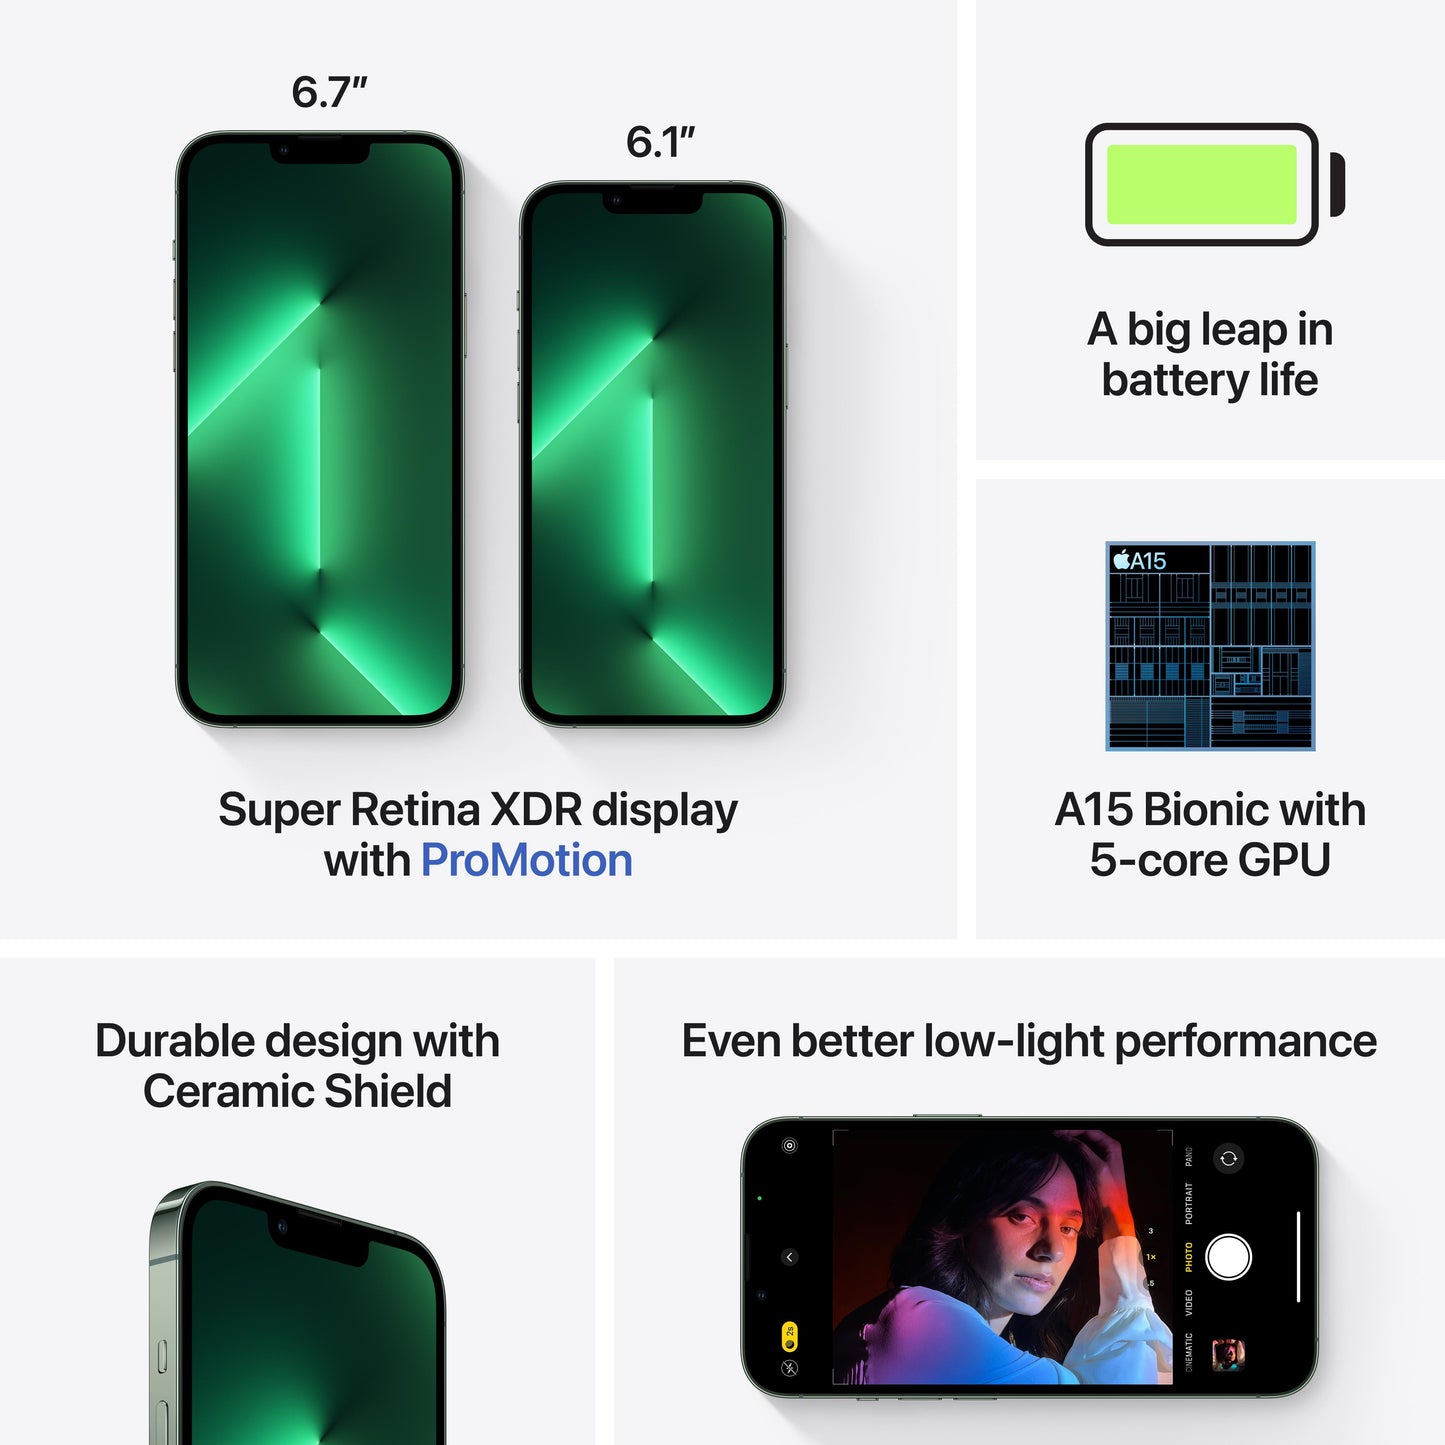 iPhone 13 Pro Max 1TB Alpine Green